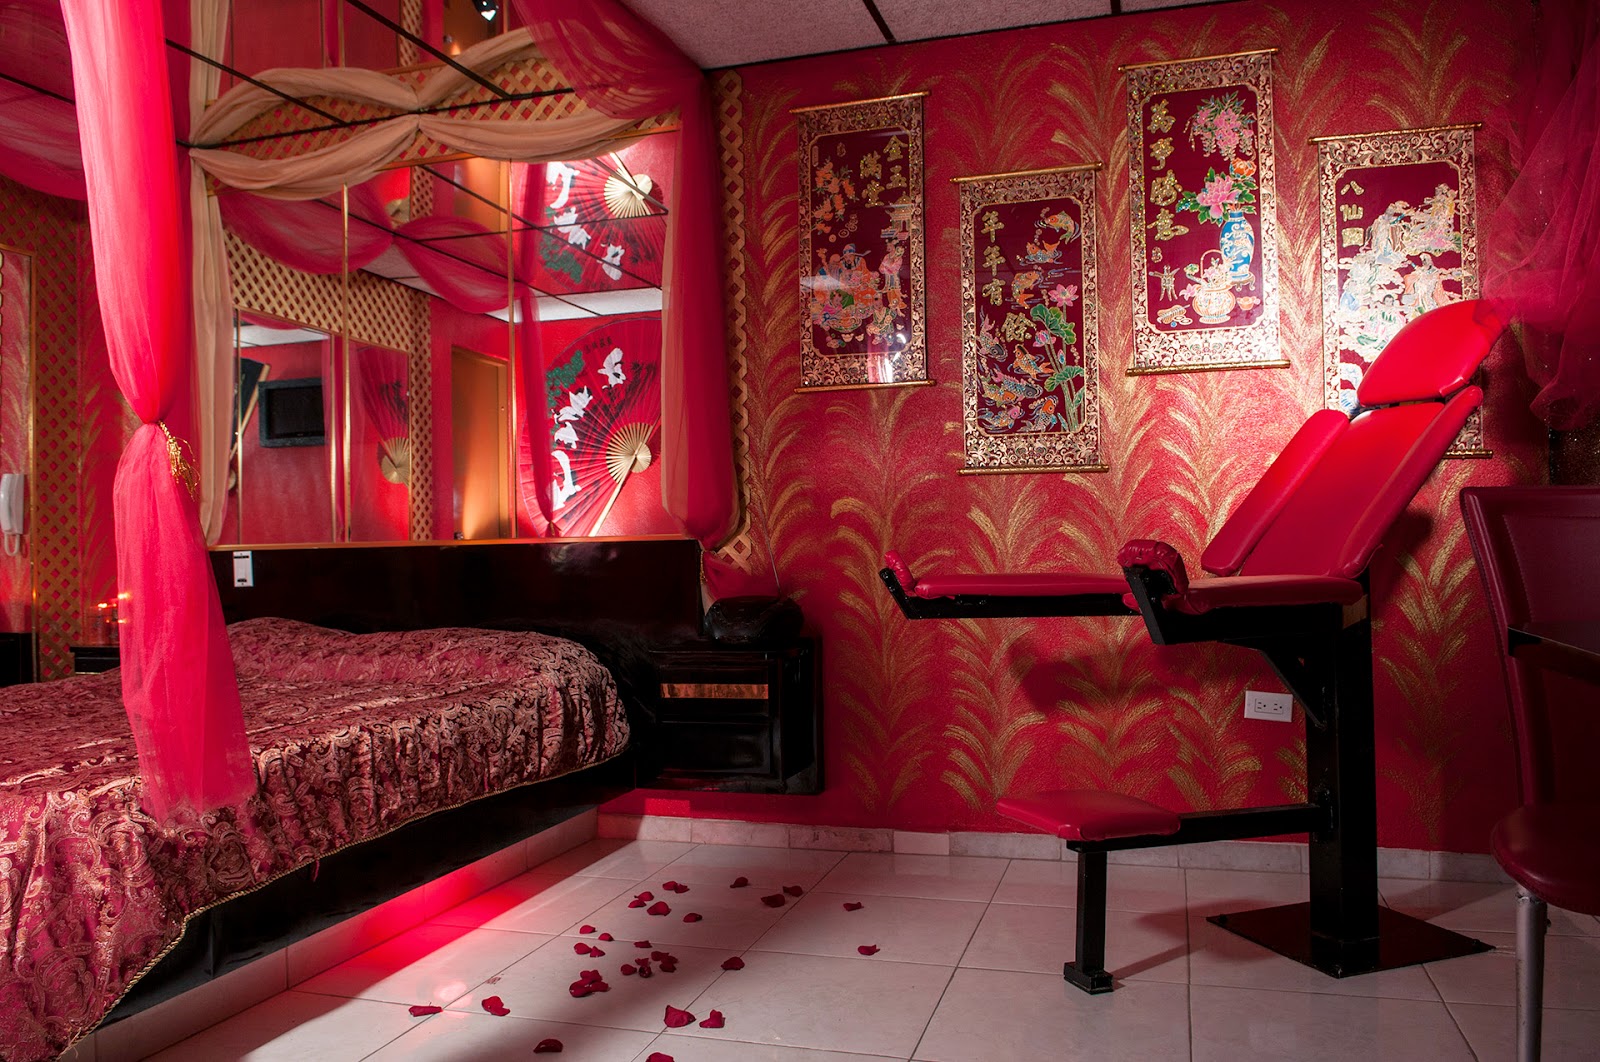 Бордель кровати. Спальня в эротическом стиле. Спальня в Красном стиле. Красная комната. Спальня для утех.